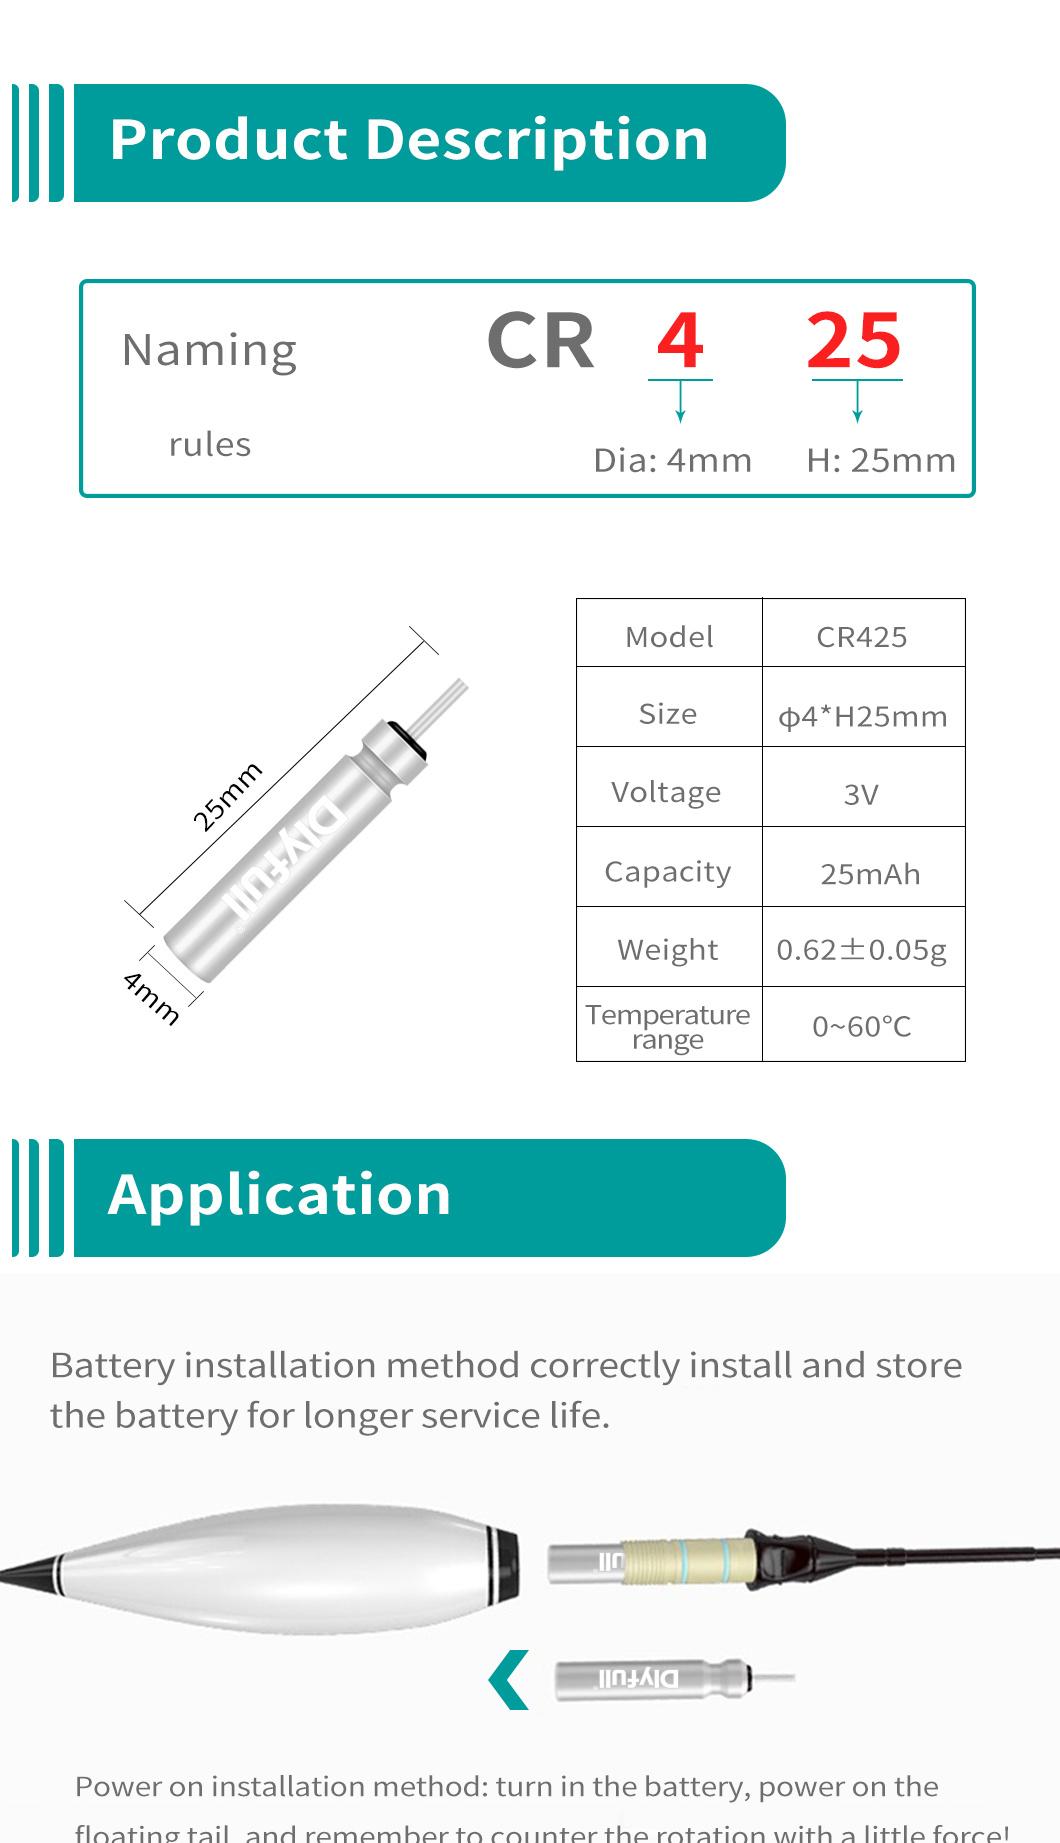 Dlyfull 3V Cr425 Lithium Pin Type Battery Fishing Battery for Fishing Bobbers, Fishing Tackles Lithium Battery